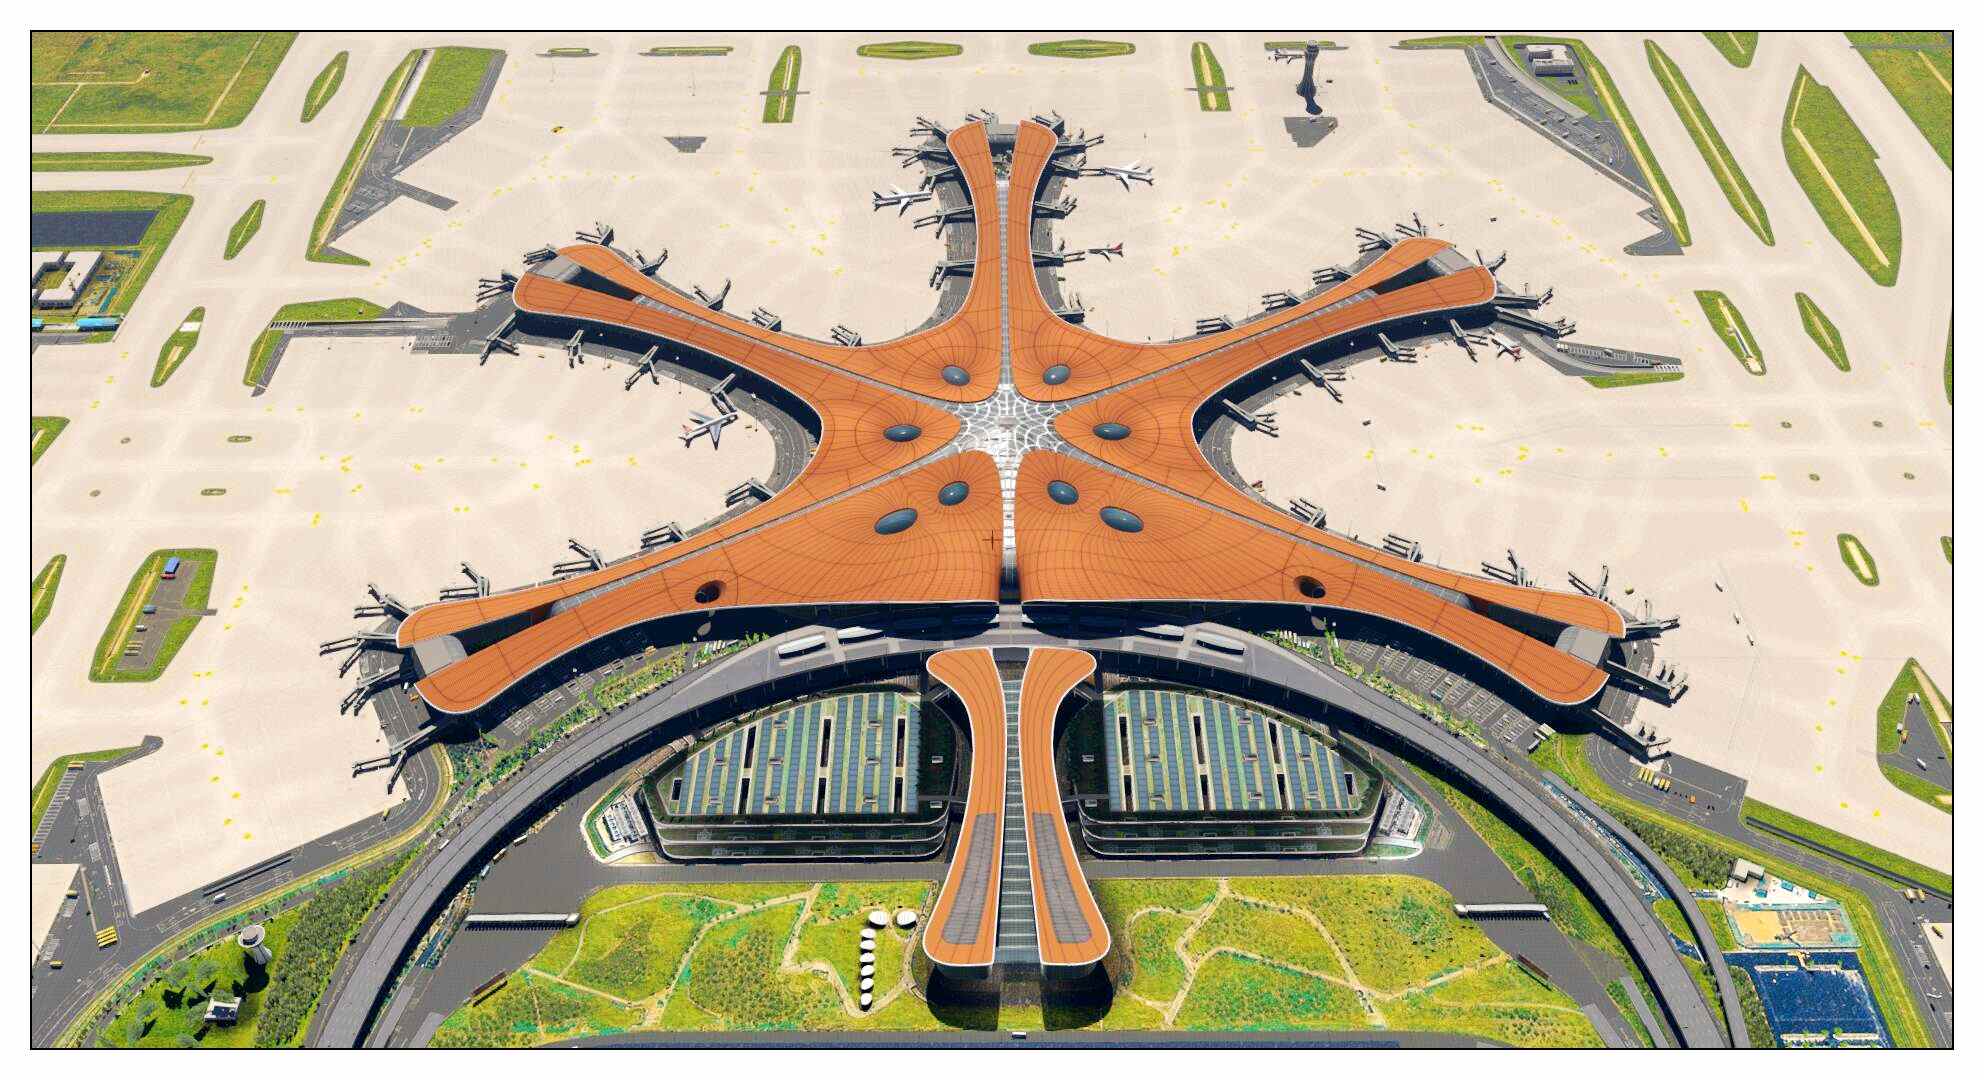 【X-Plane】ZBAD北京大兴国际机场-正式发布-1032 